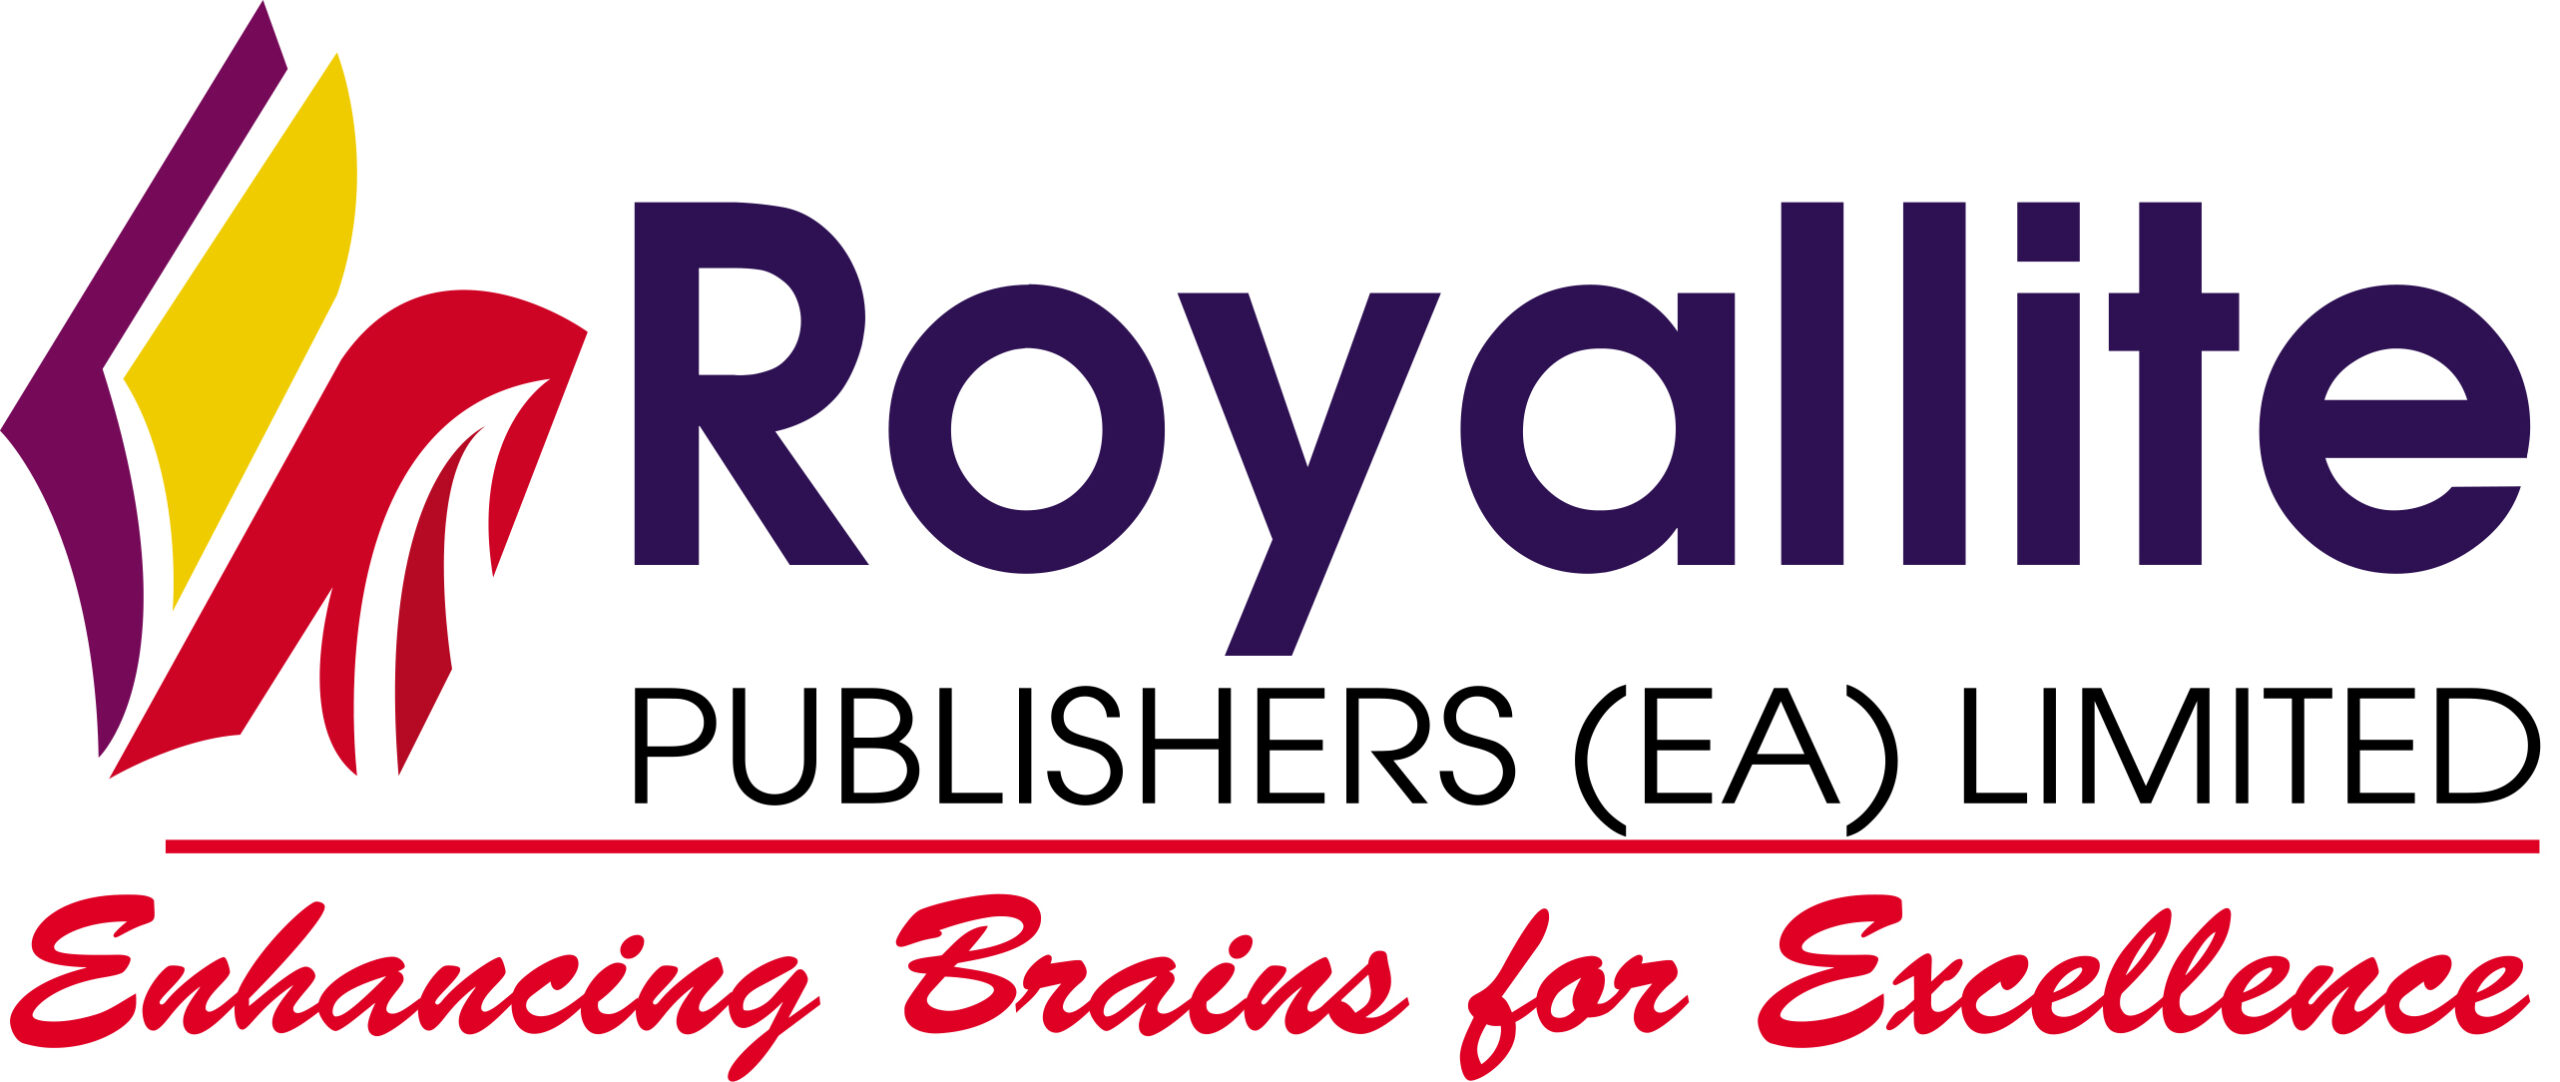 Royallite Publishers